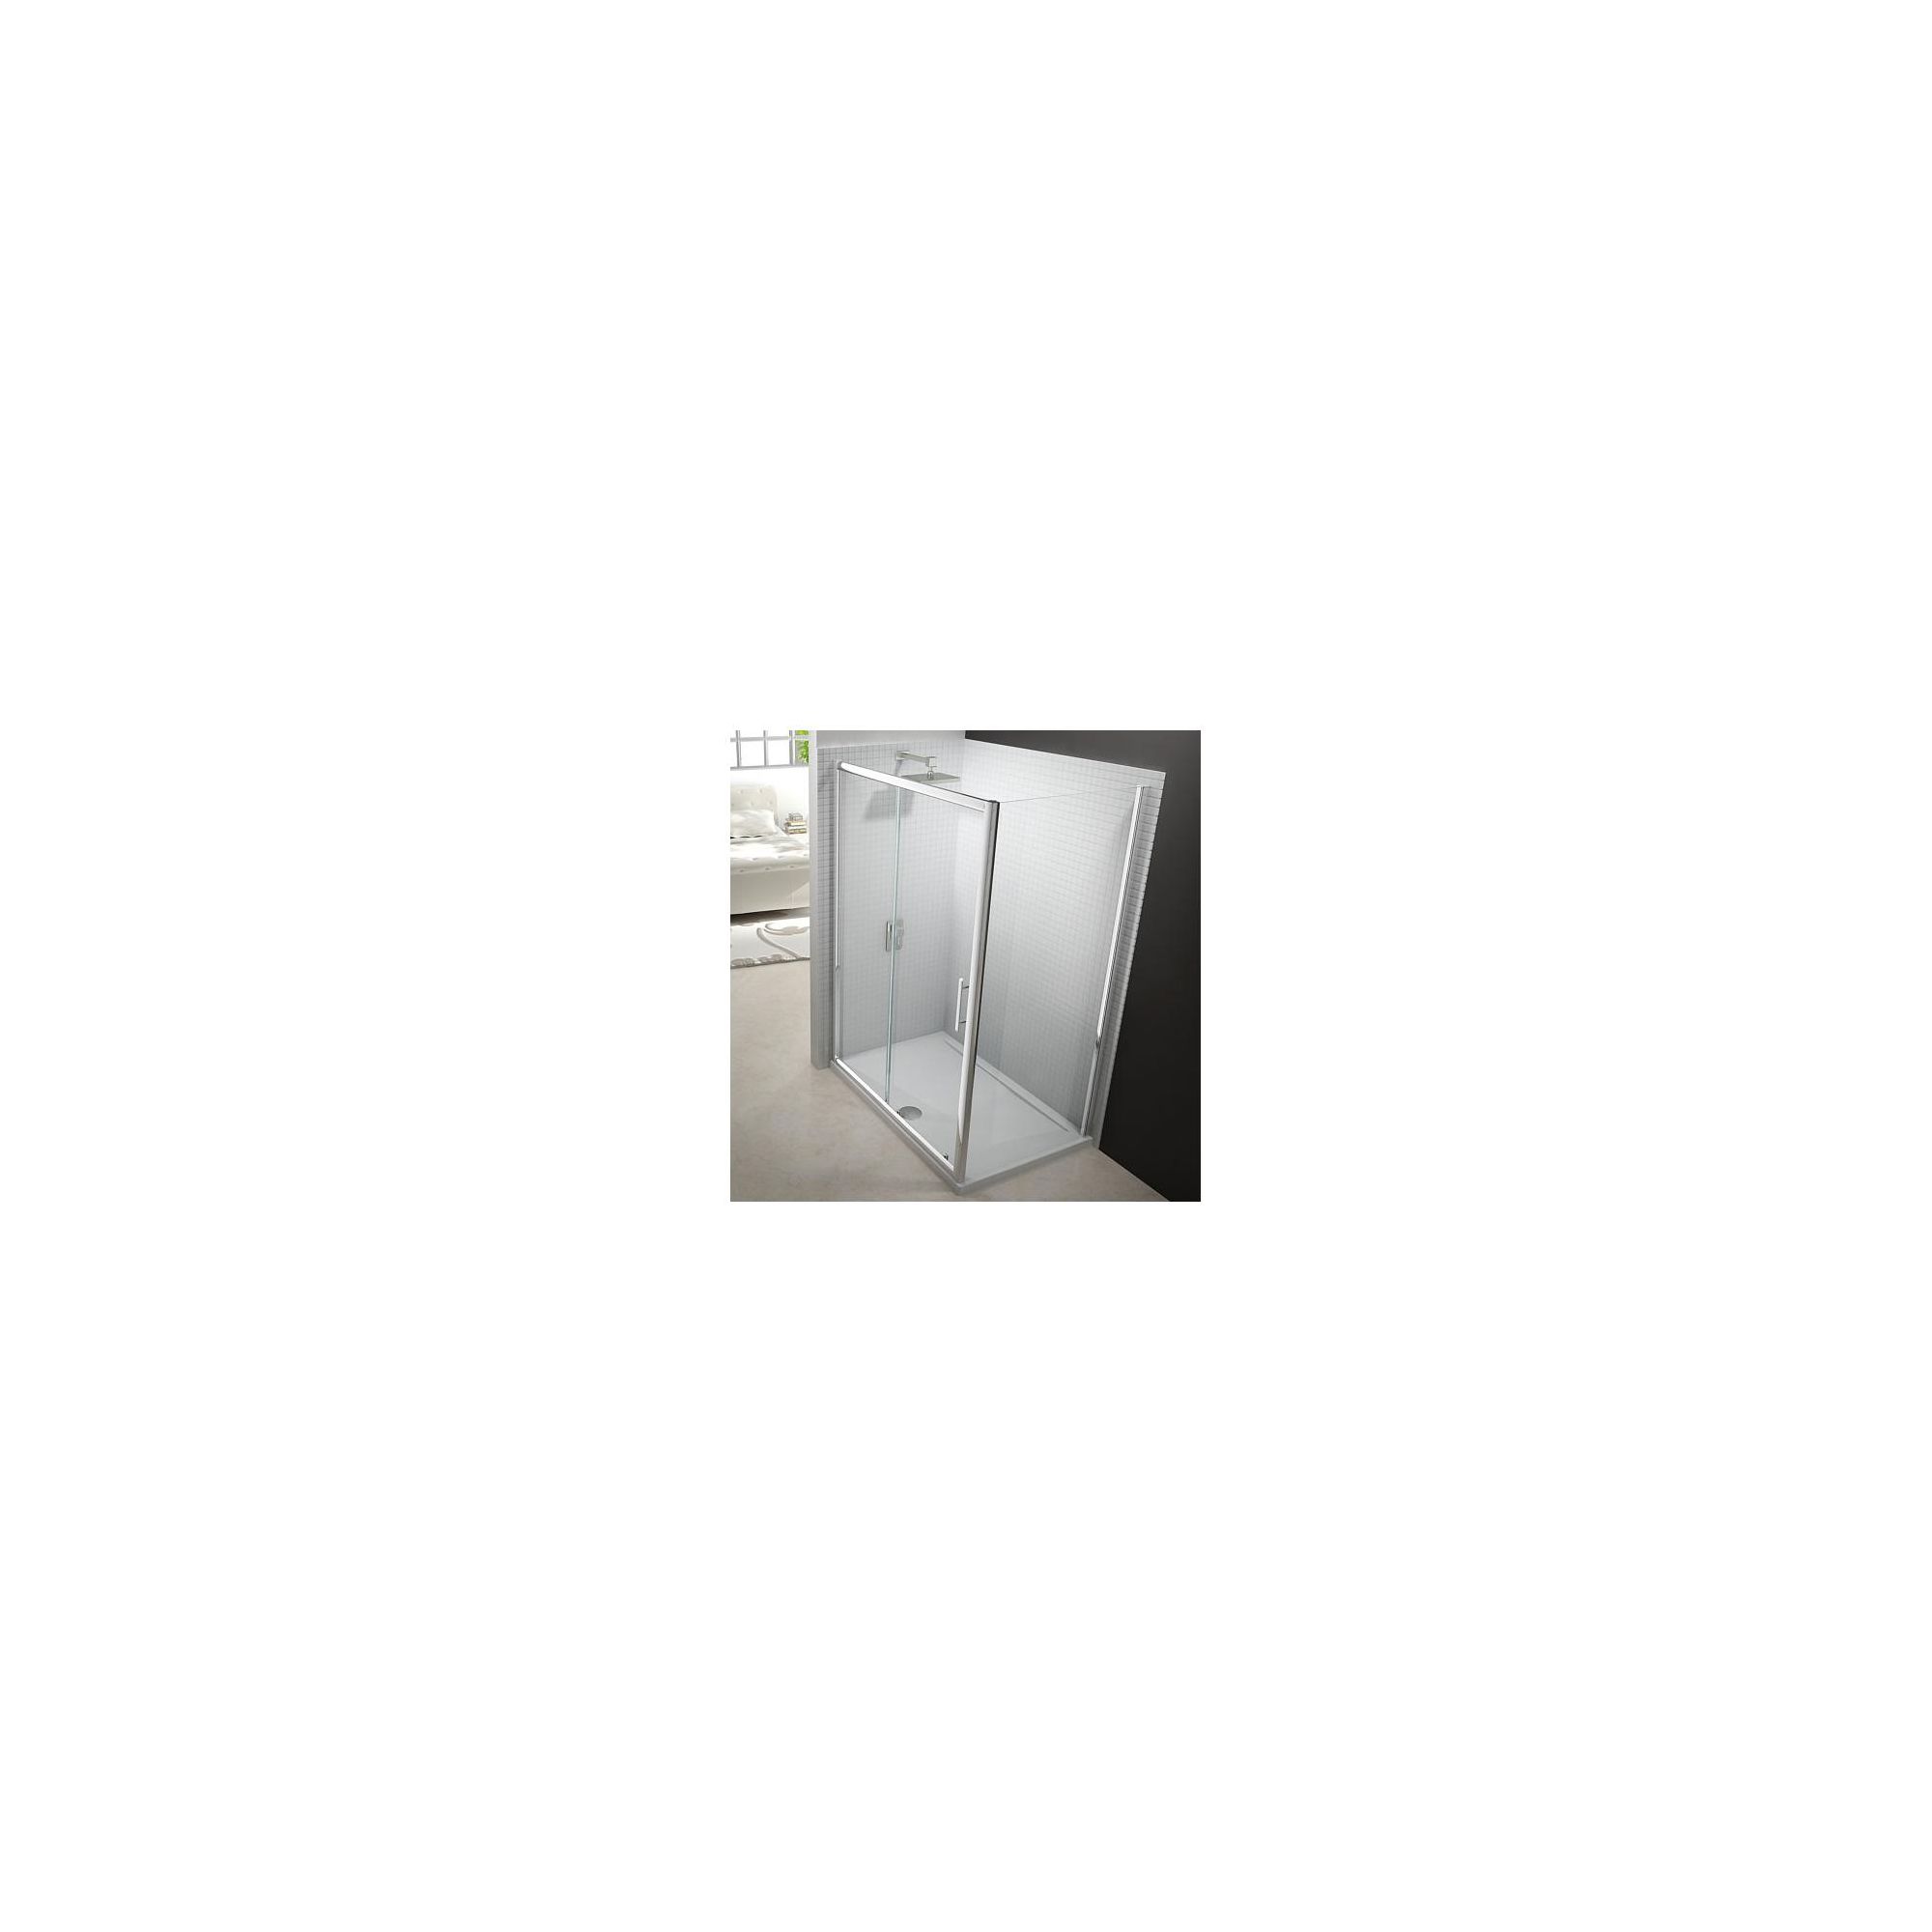 Merlyn Series 6 Sliding Shower Door, 1400mm Wide, Chrome Frame, 6mm Glass at Tesco Direct